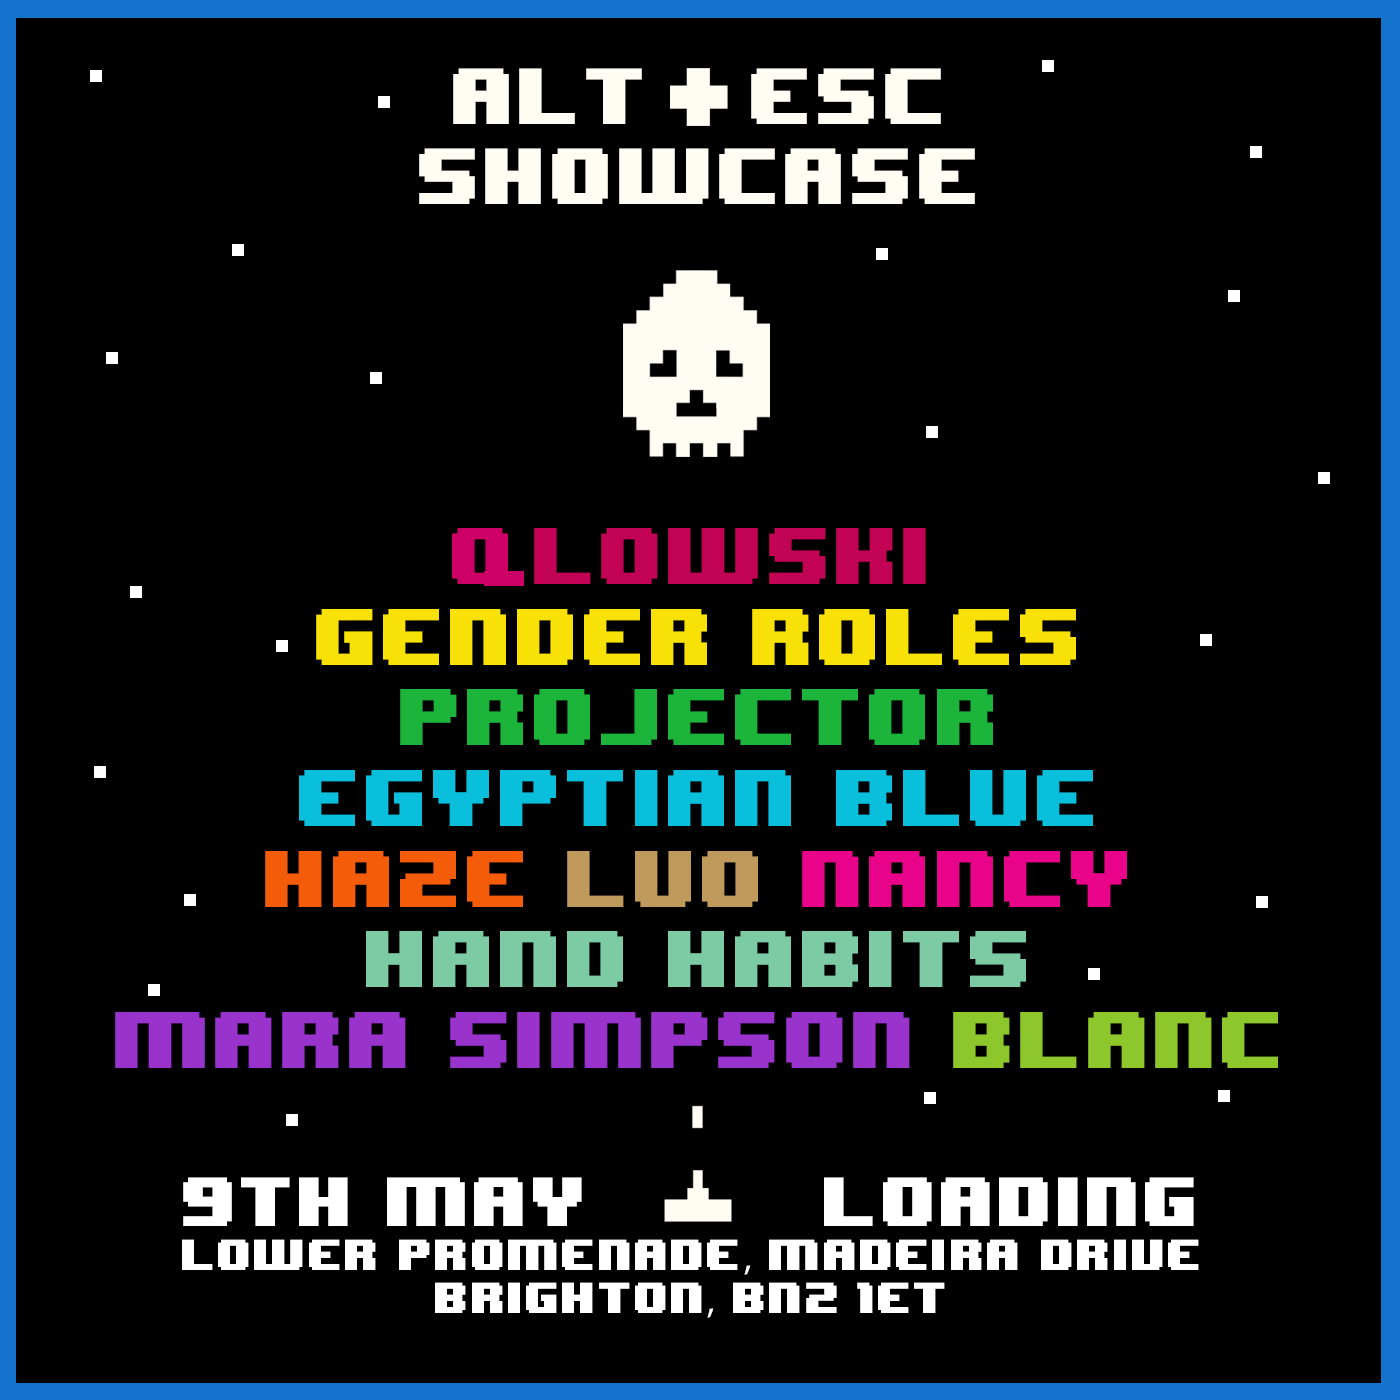 Alt+ Esc Showcase